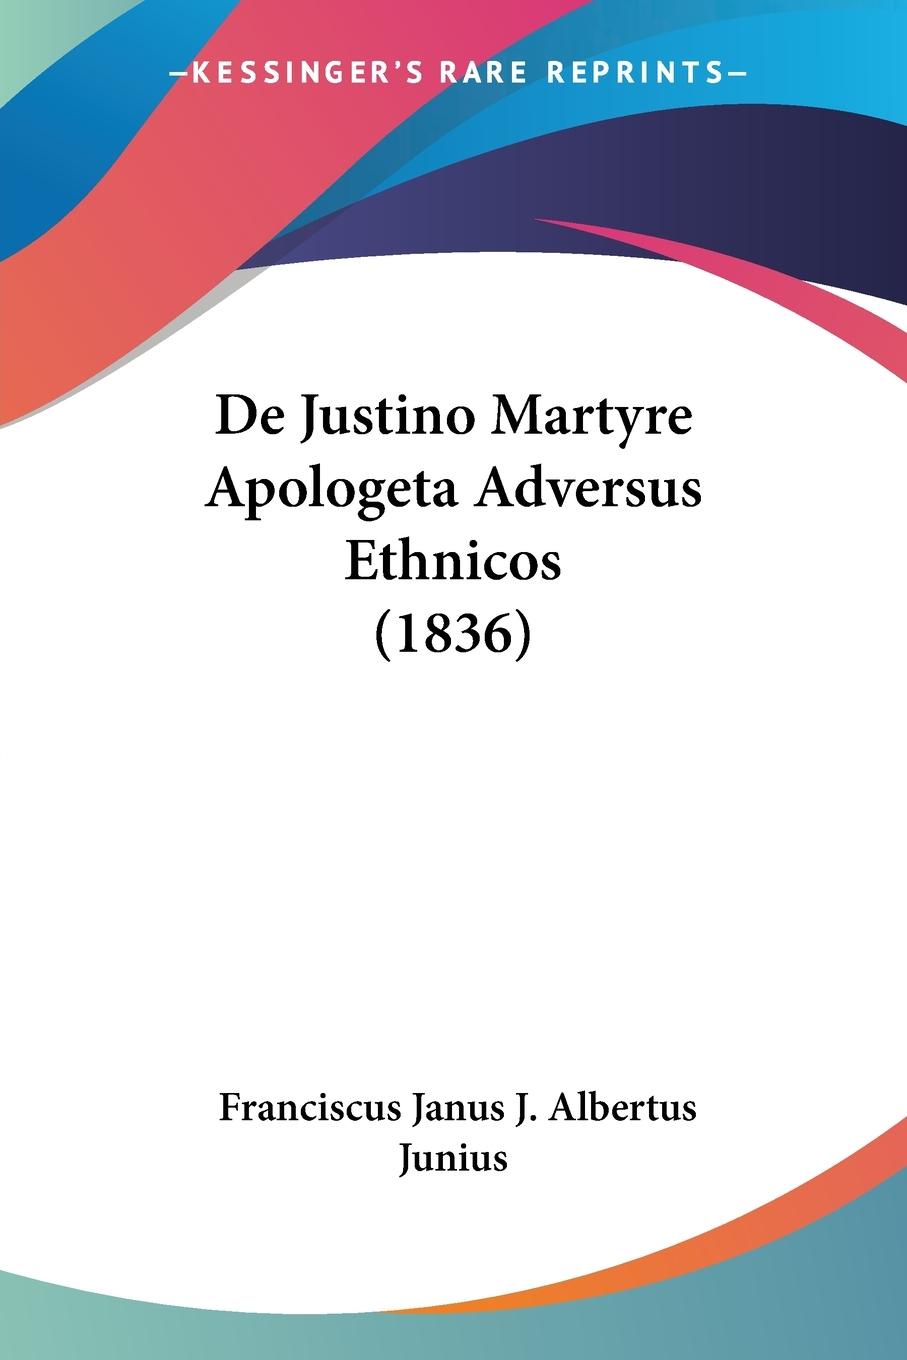 De Justino Martyre Apologeta Adversus Ethnicos (1836) - Junius, Franciscus Janus J. Albertus